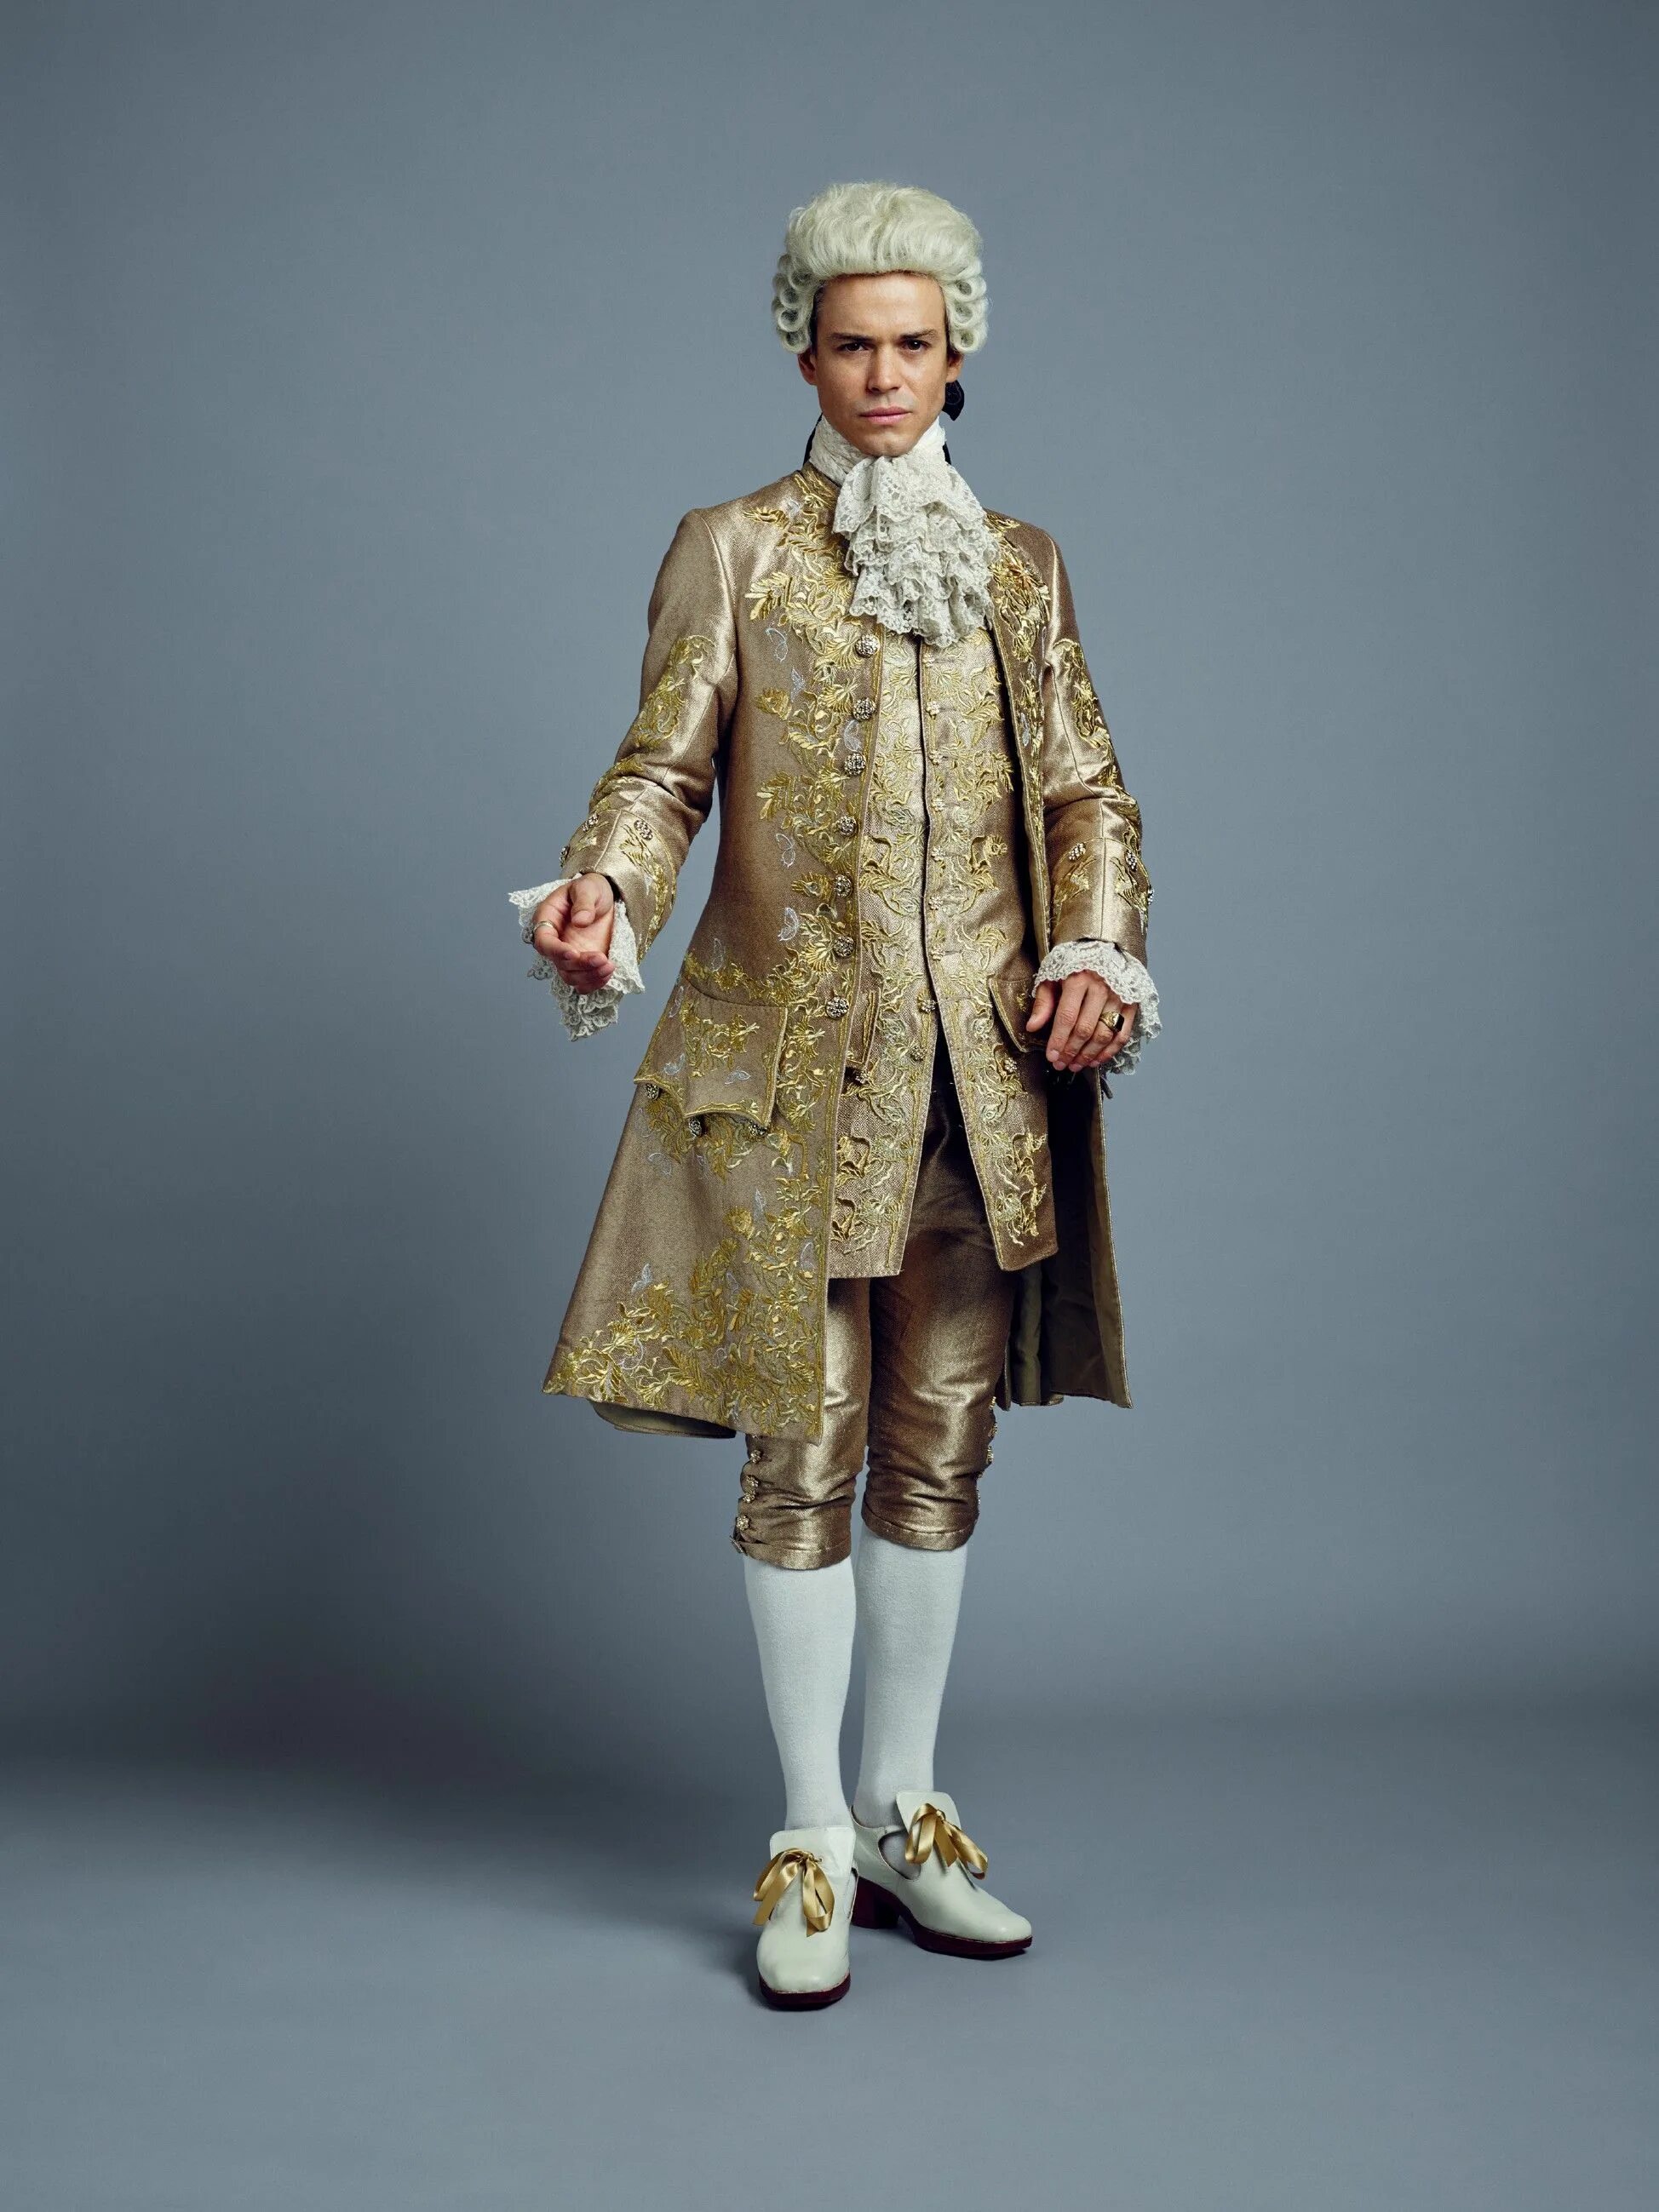 Купить костюм 18. Чужестранка Людовик XV. Костюм короля 18 века. Чужестранка Король Людовик.